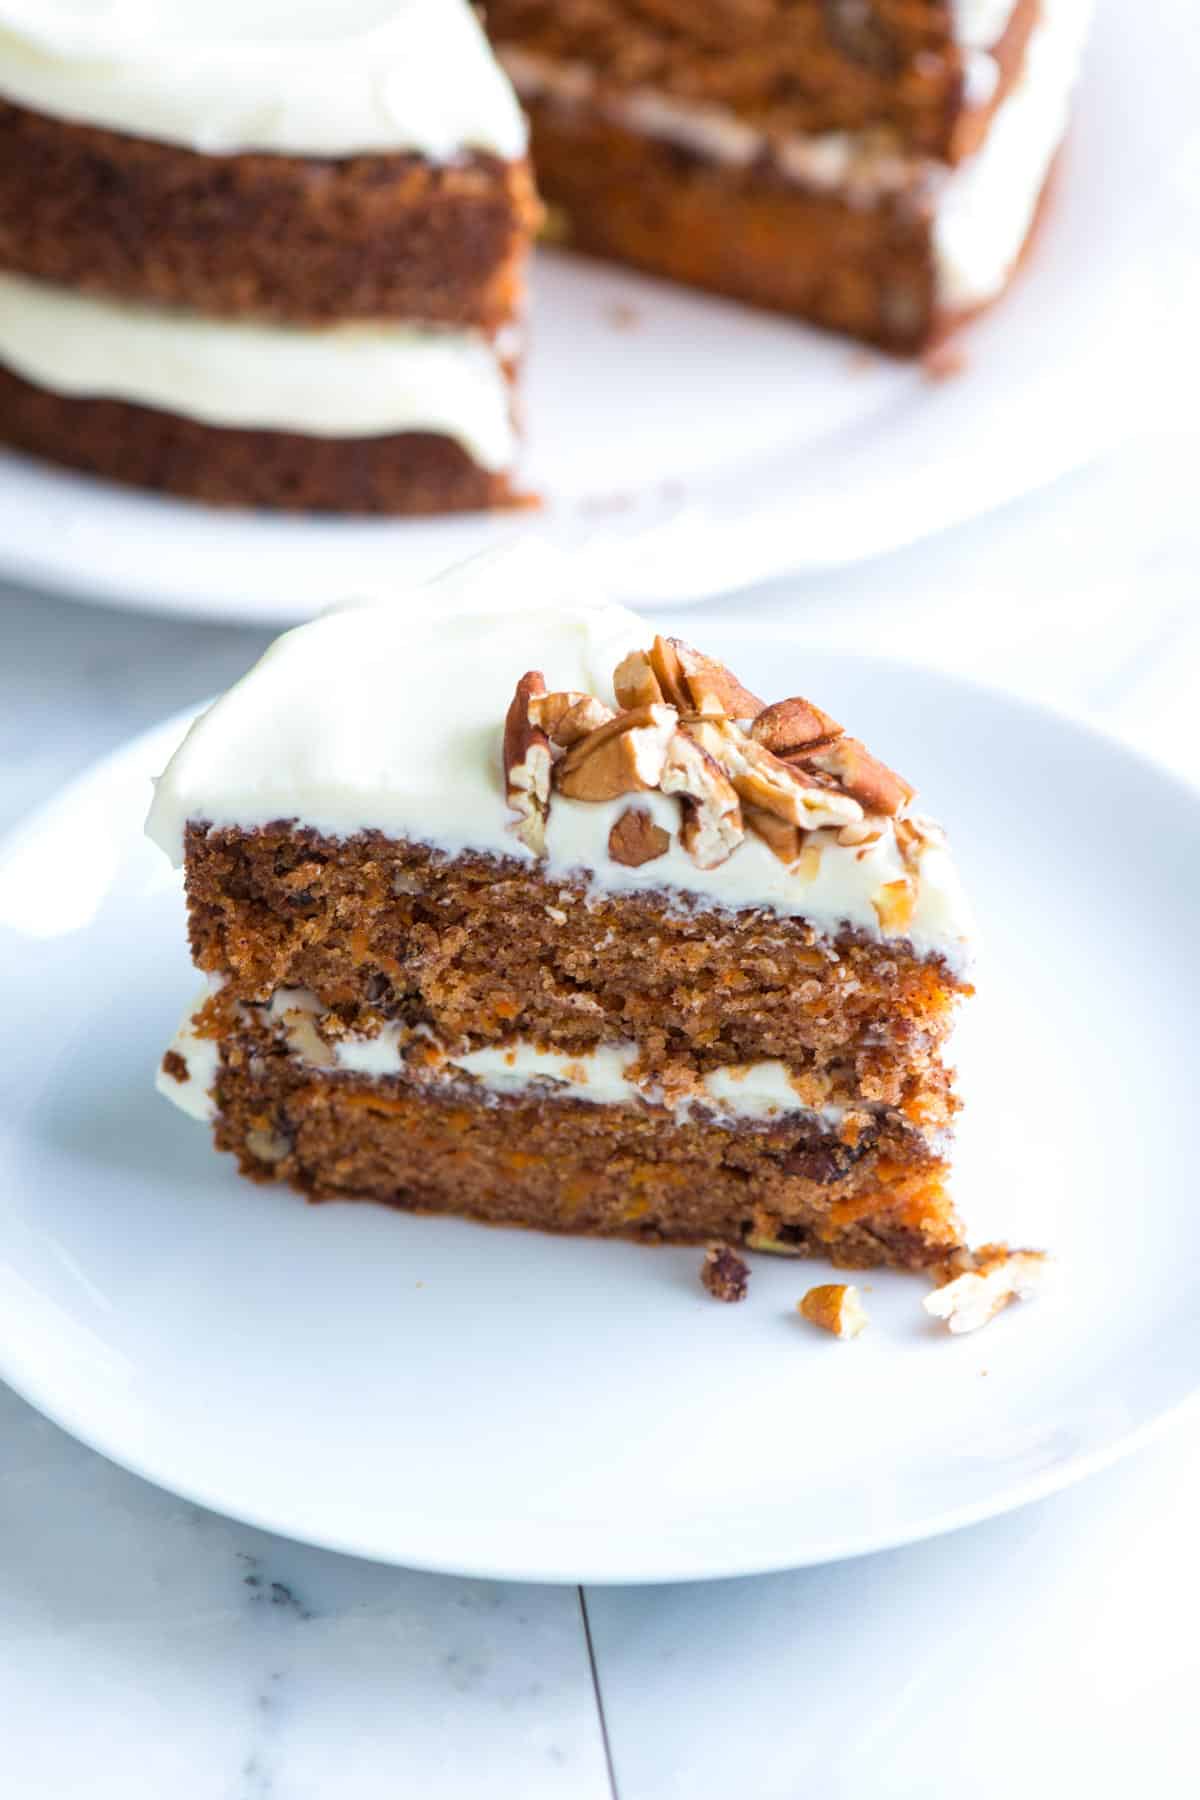 CAKES FOR SALE: SOLD 1. 1kg Carrot cake 65,000/- 2. 1kg Lemon cake 65,000/-  Karibu Soul Treats 😄 #ATasteOfHeaven | Instagram